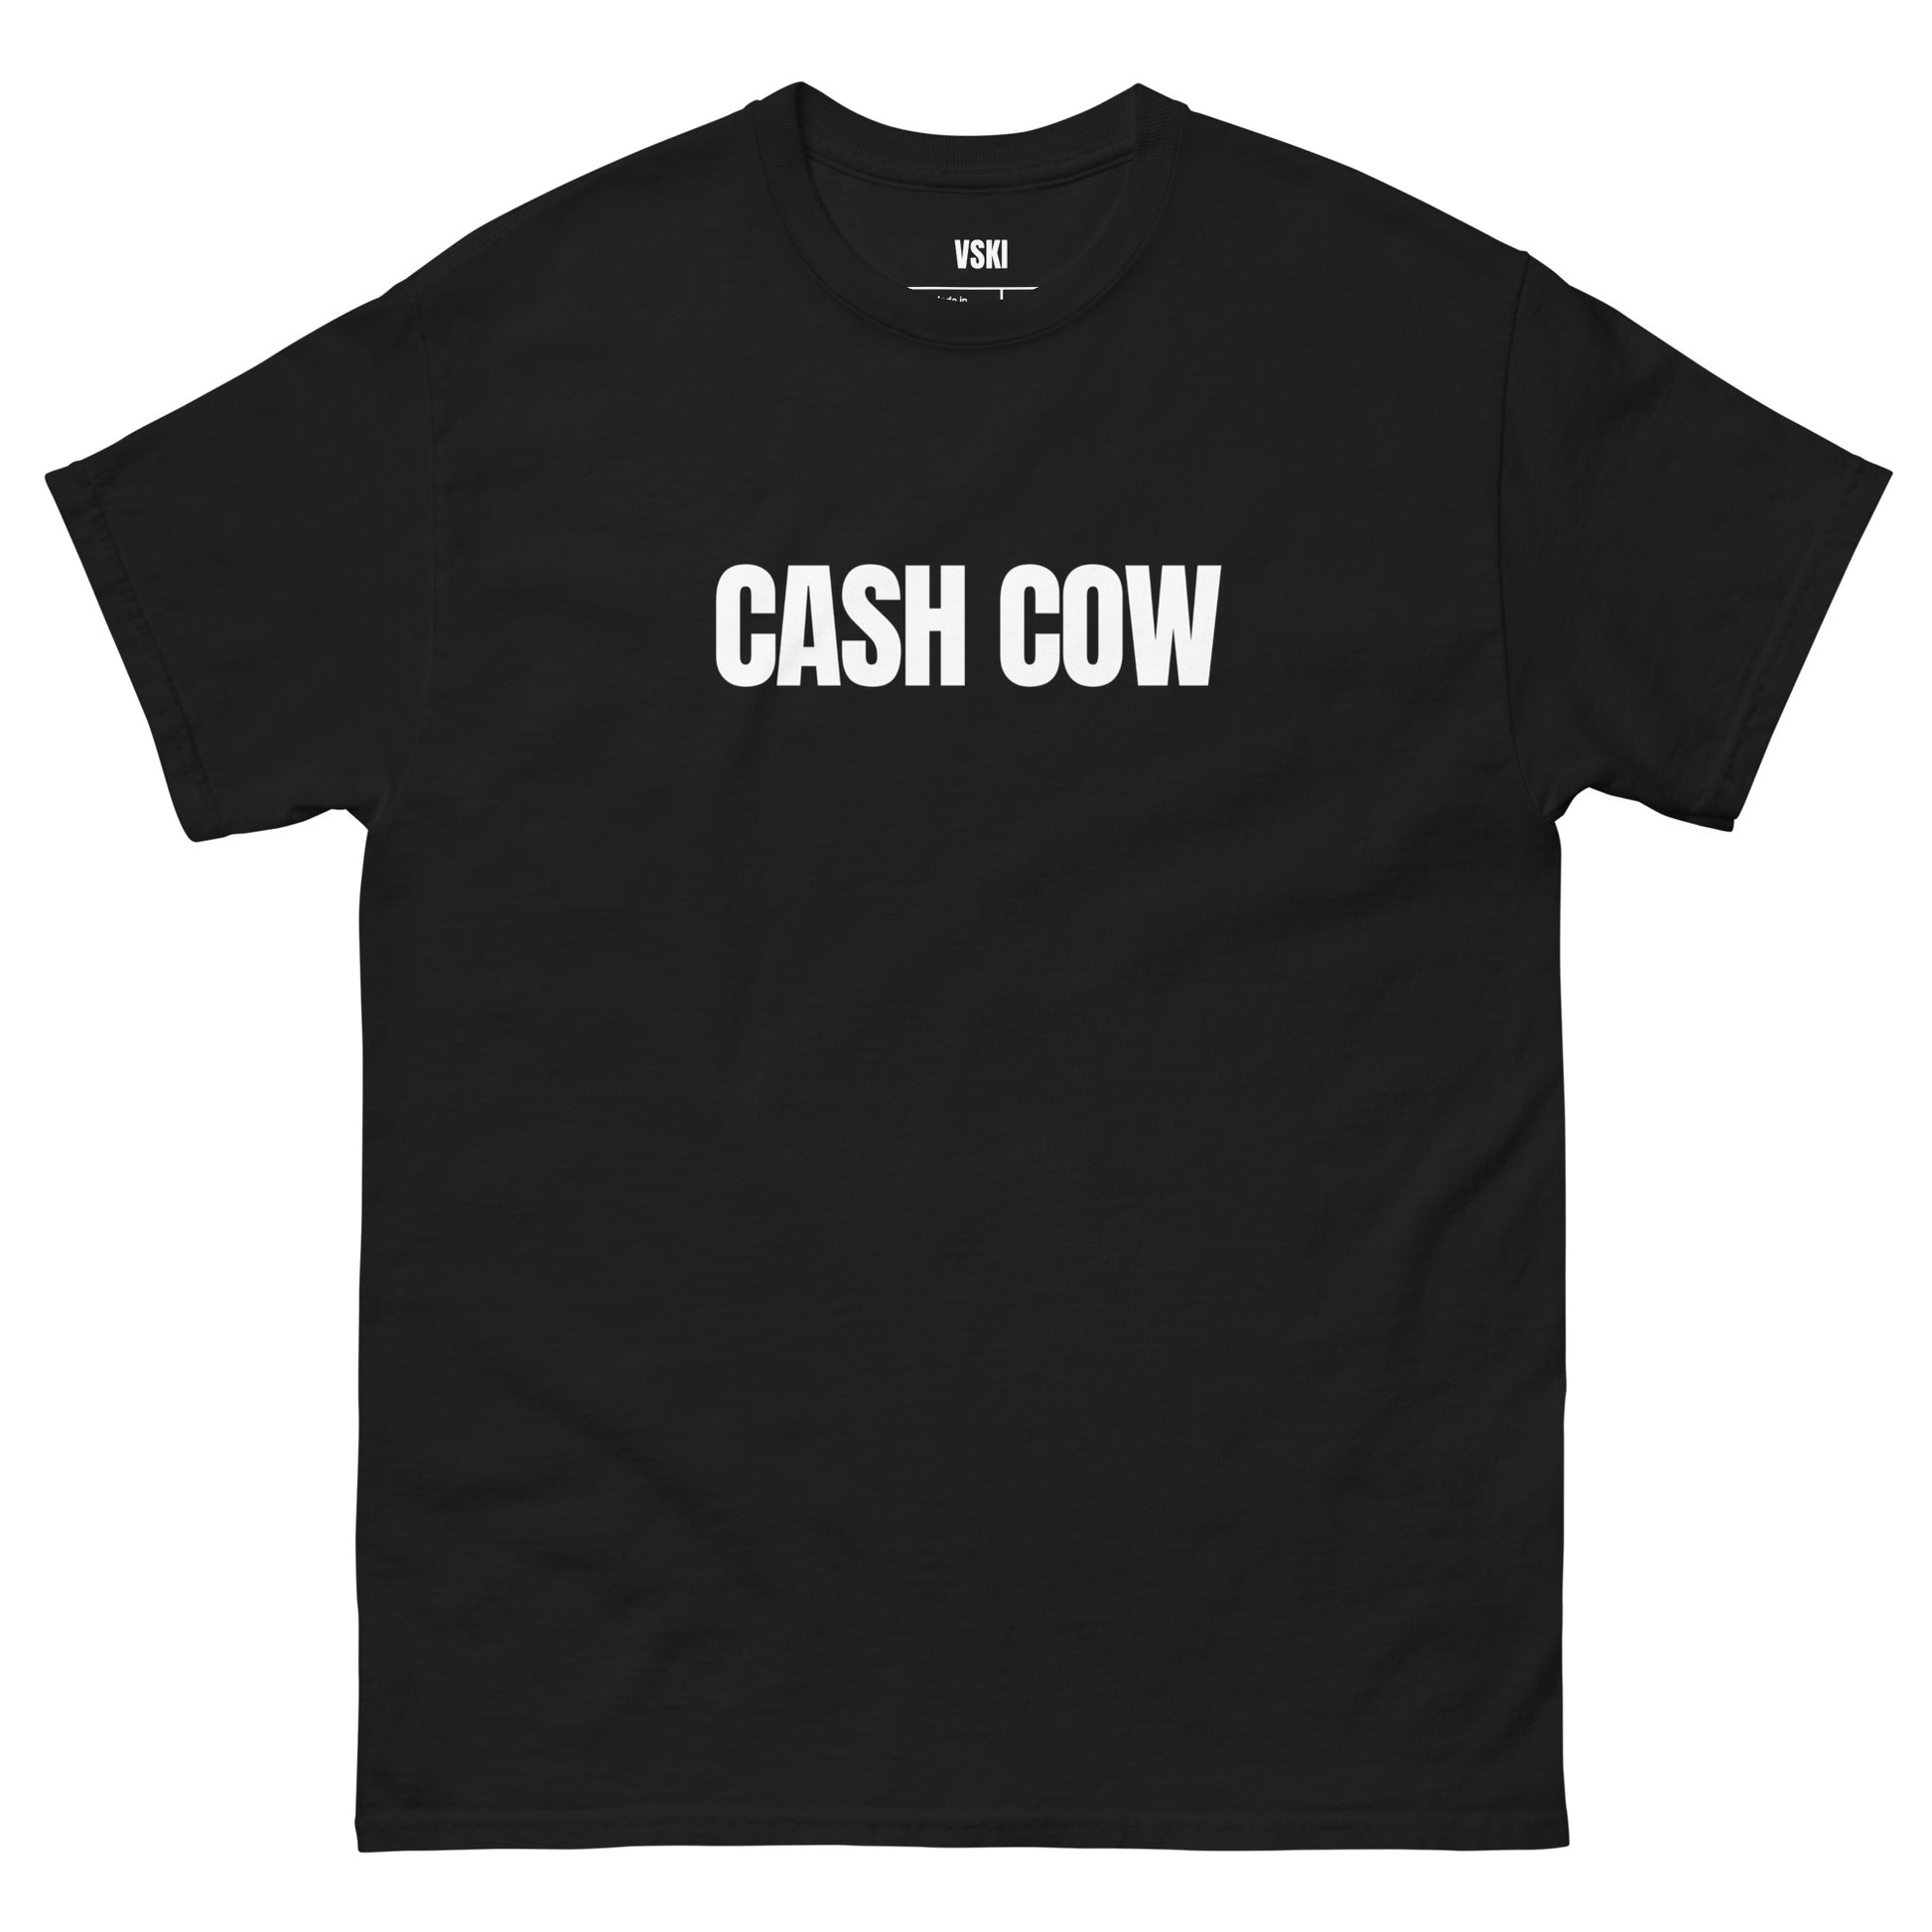 Cash Cow T-Shirt